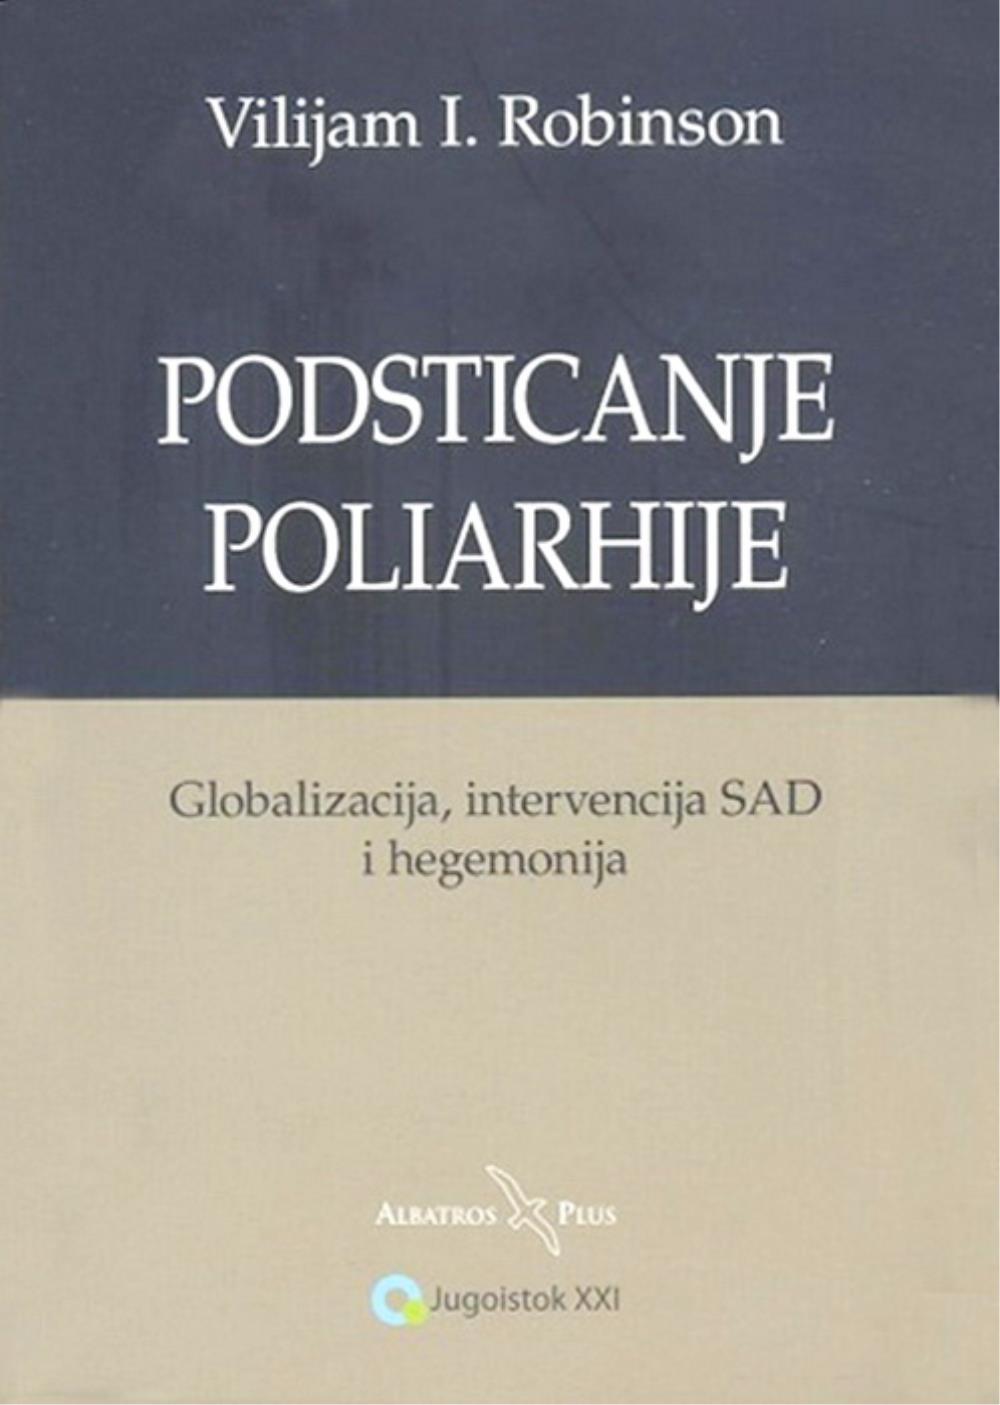 Selected image for Podsticanje poliarhije - Vilijam I. Robinson